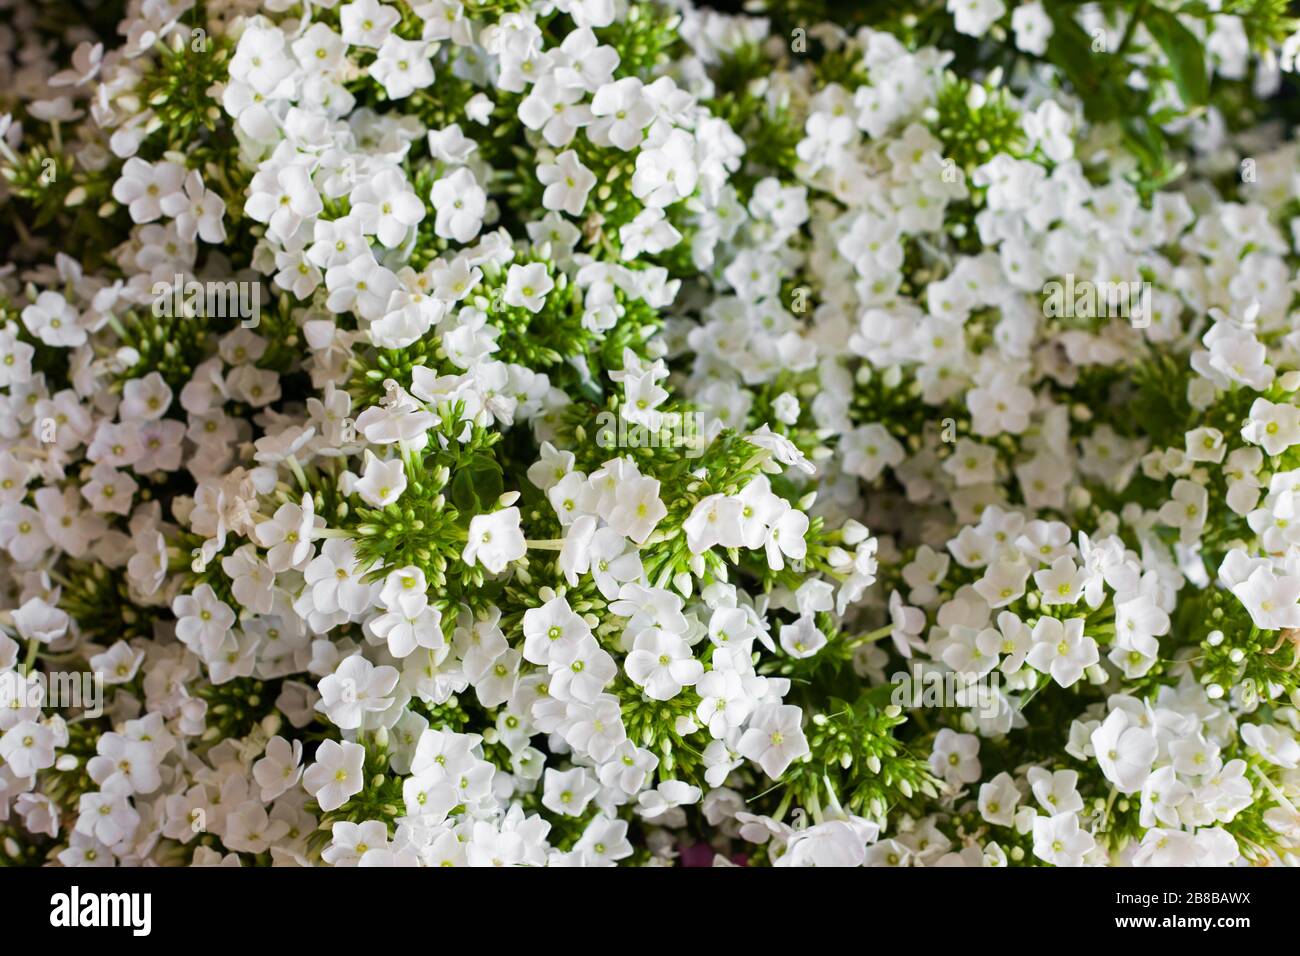 Weiße Hydrangea-Blume. Hydrangea - gebräuchliche Namen Hydrangea und Hortensia. Hintergrund des Vollformatsrahmens. Stockfoto